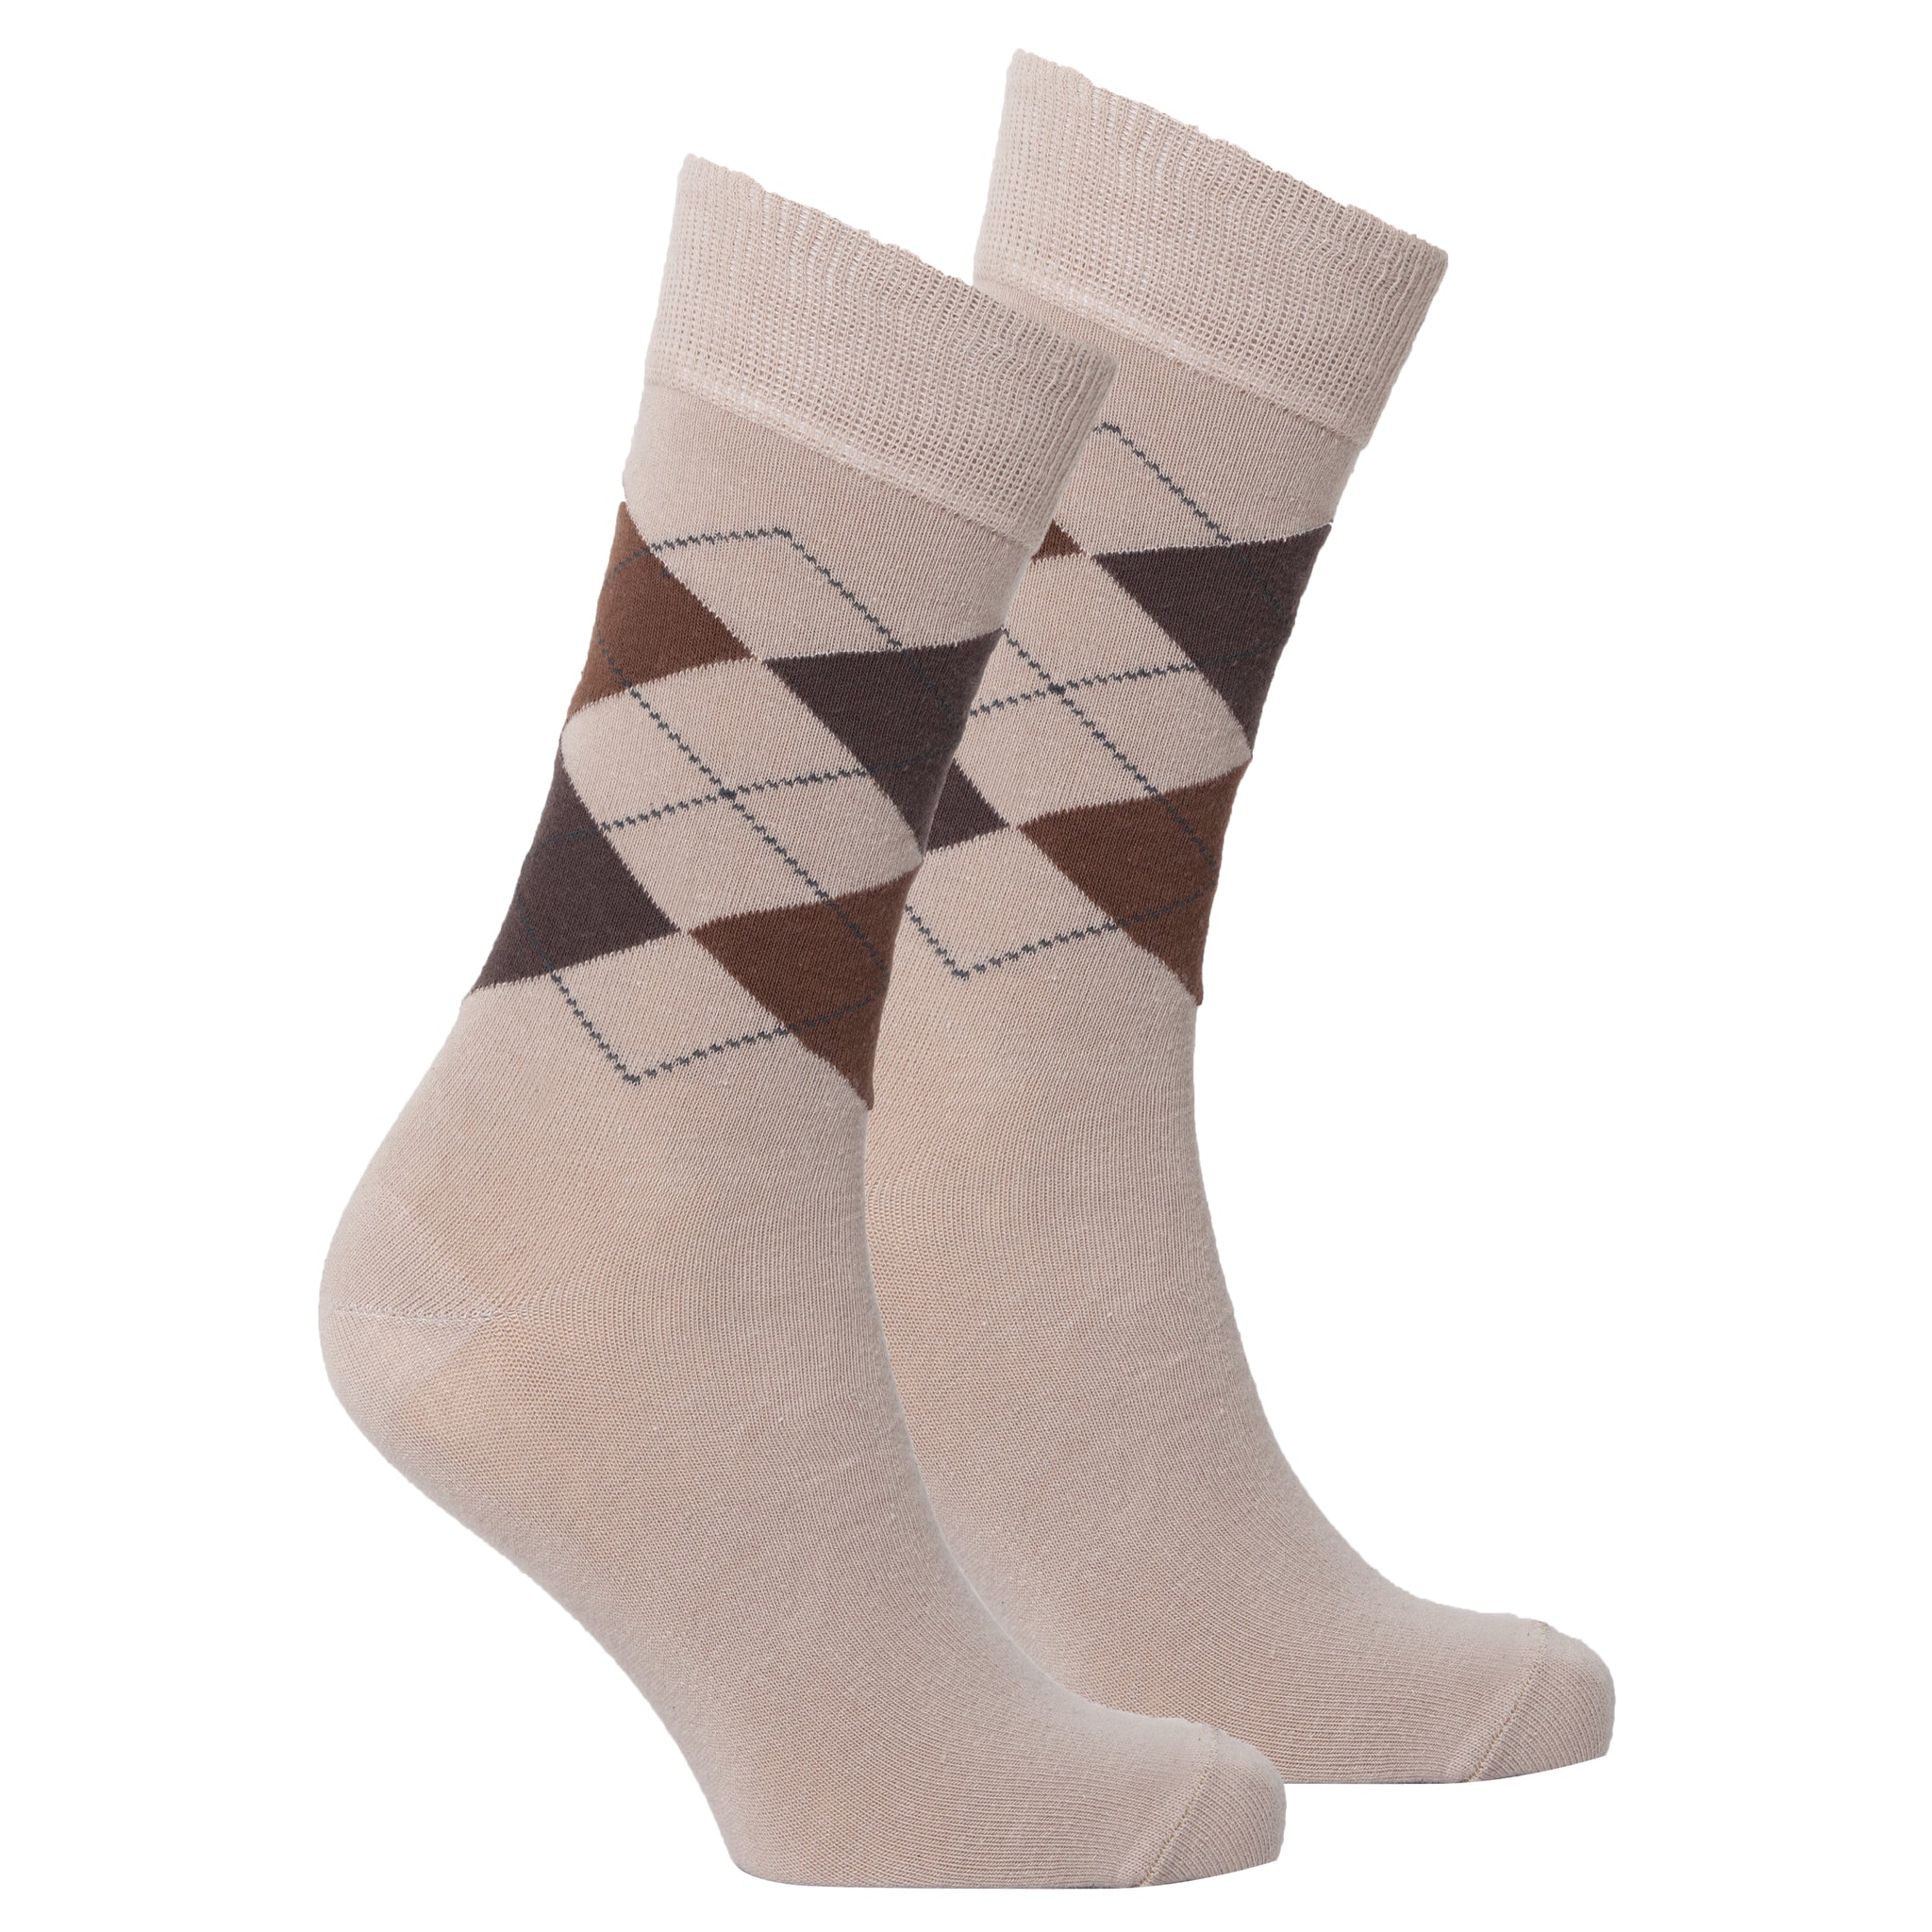 Men's Beige Argyle Socks